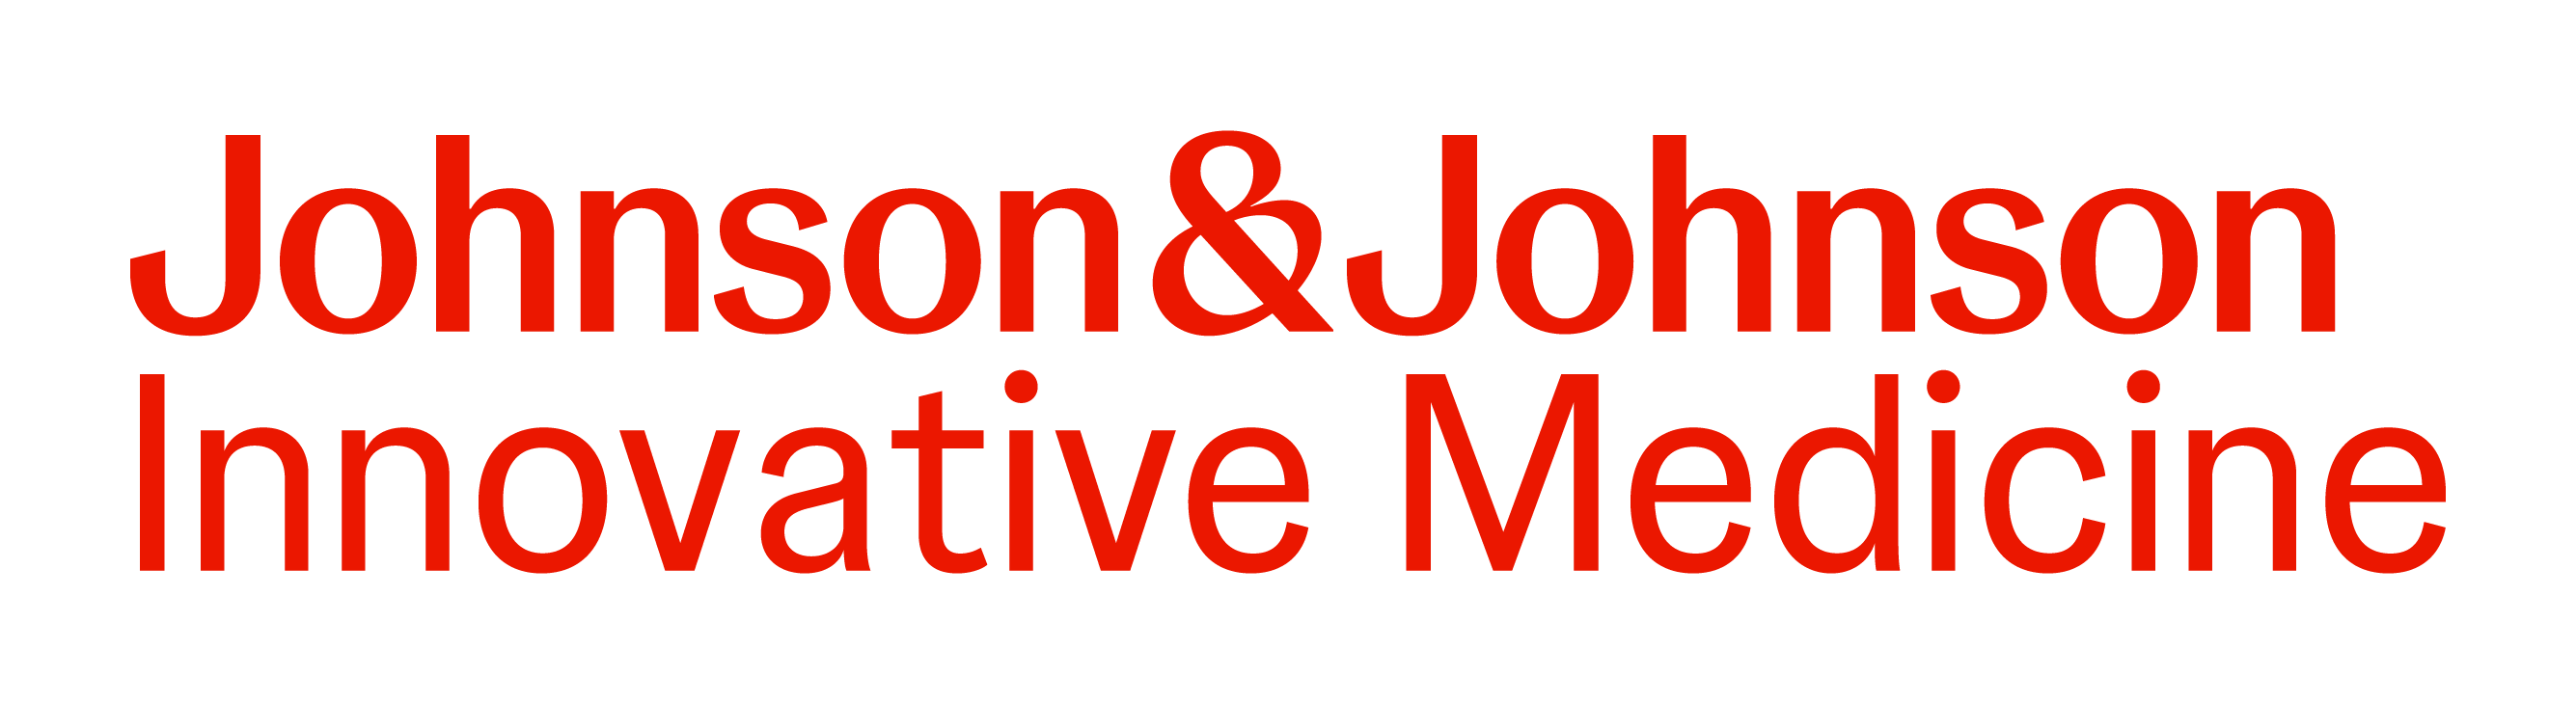 Johnson & Johnson Innovative Medicine - Sponsor